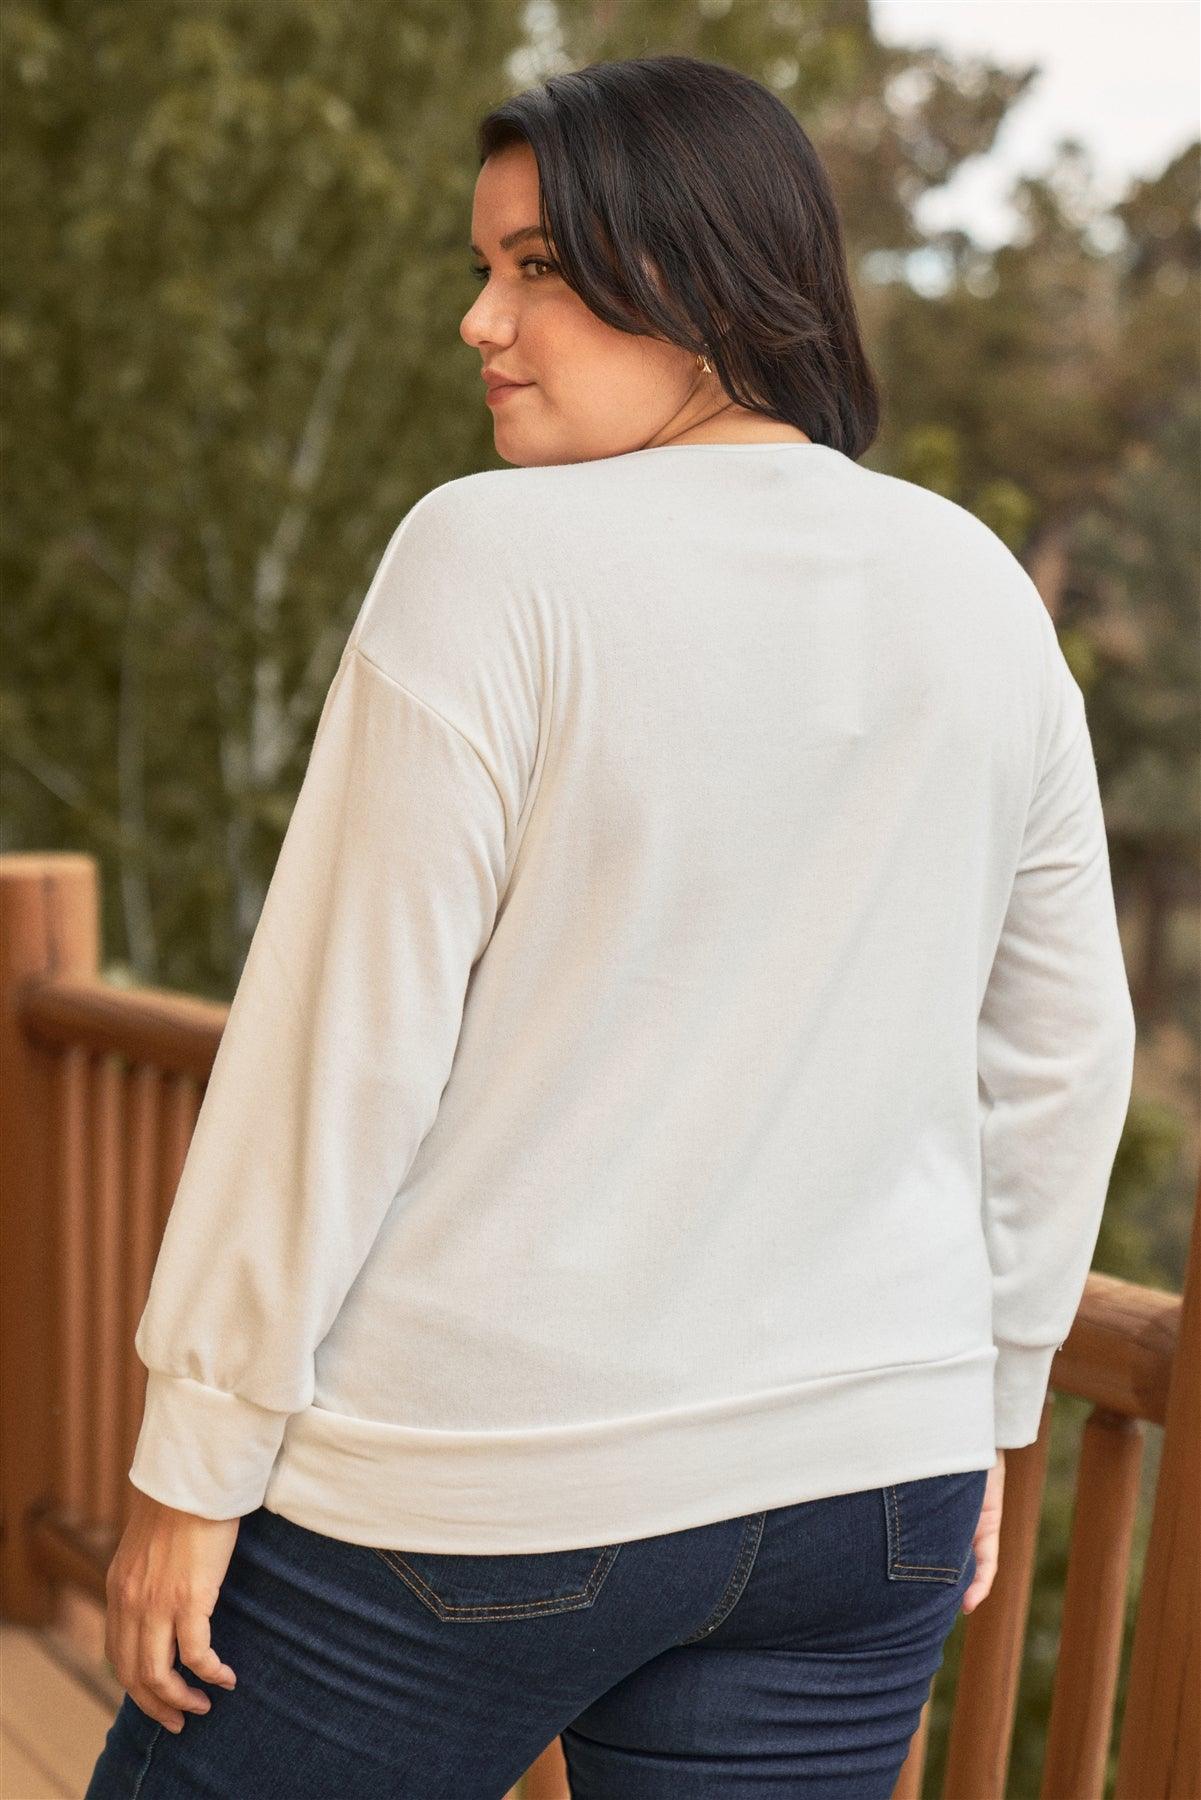 Junior Plus White Metaphor Printed Long Sleeve Relaxed Sweatshirt Top /3-2-1